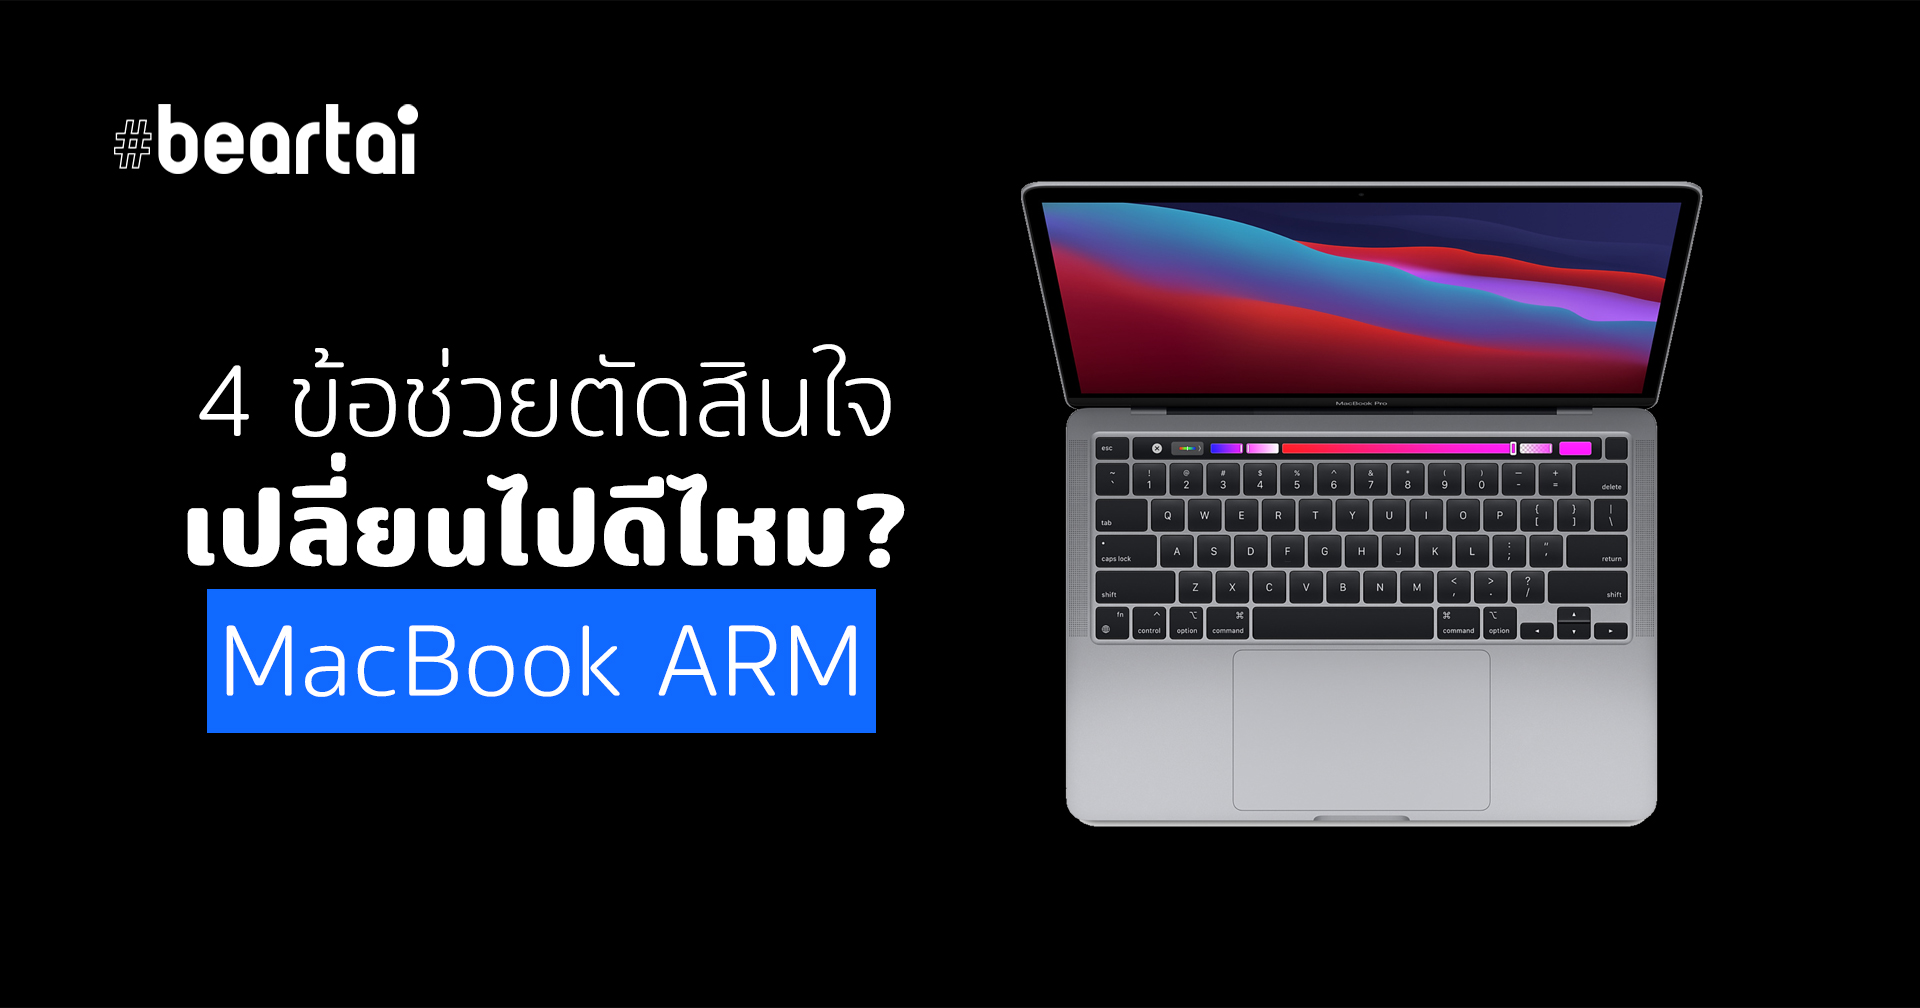 4 ข้อช่วยตัดสินใจ เปลี่ยนไปดีไหม MacBook ARM